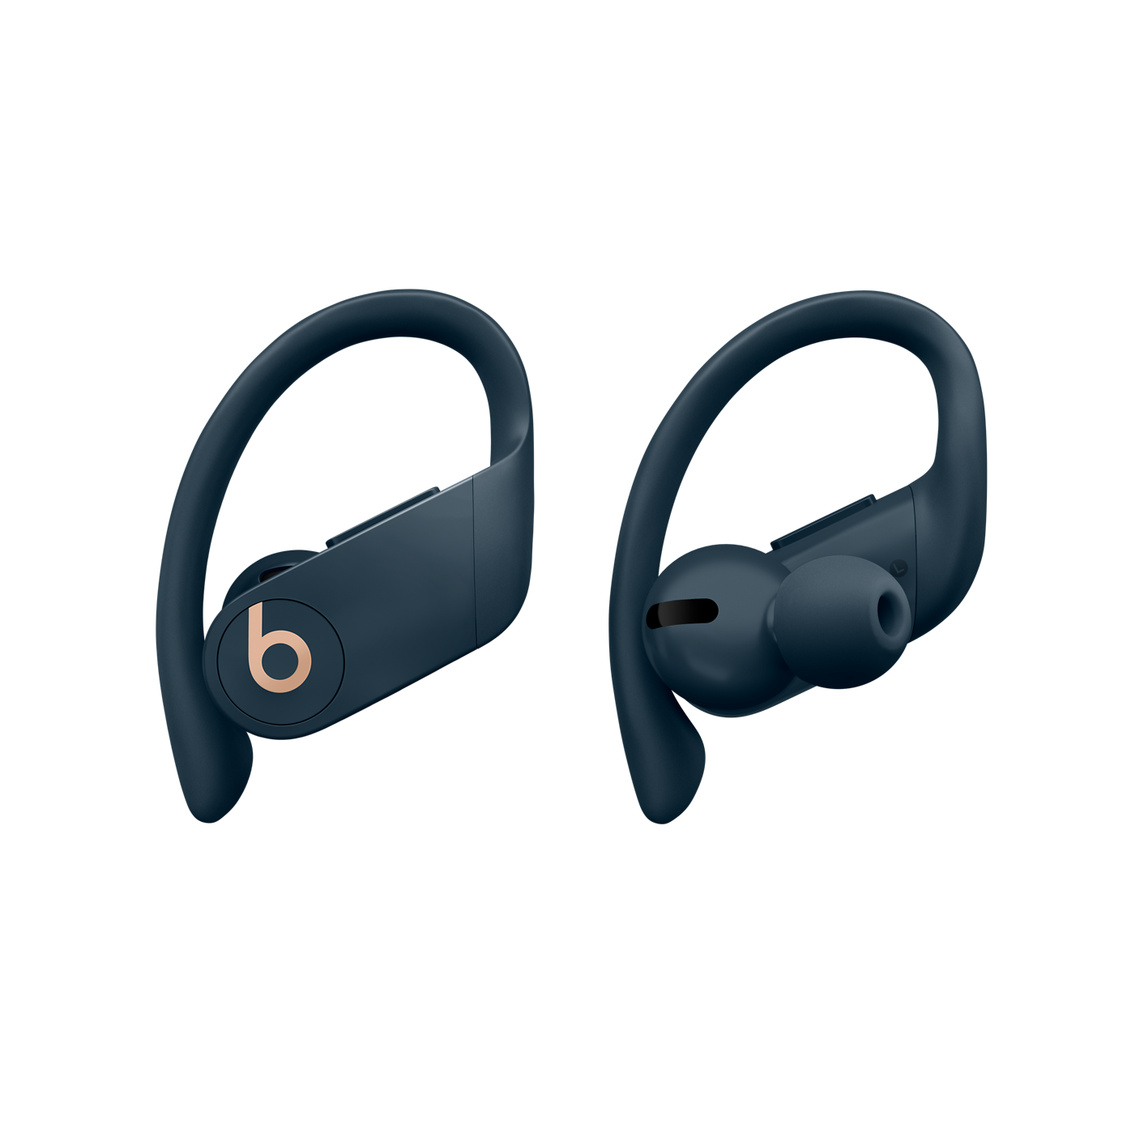 De helt trådløse Powerbeats Pro-øretelefoner i marineblå med justerbare ørekroge og god pasform kan tilpasses med forskellige ørepropstørrelser, så de bliver endnu mere behagelige at have på.